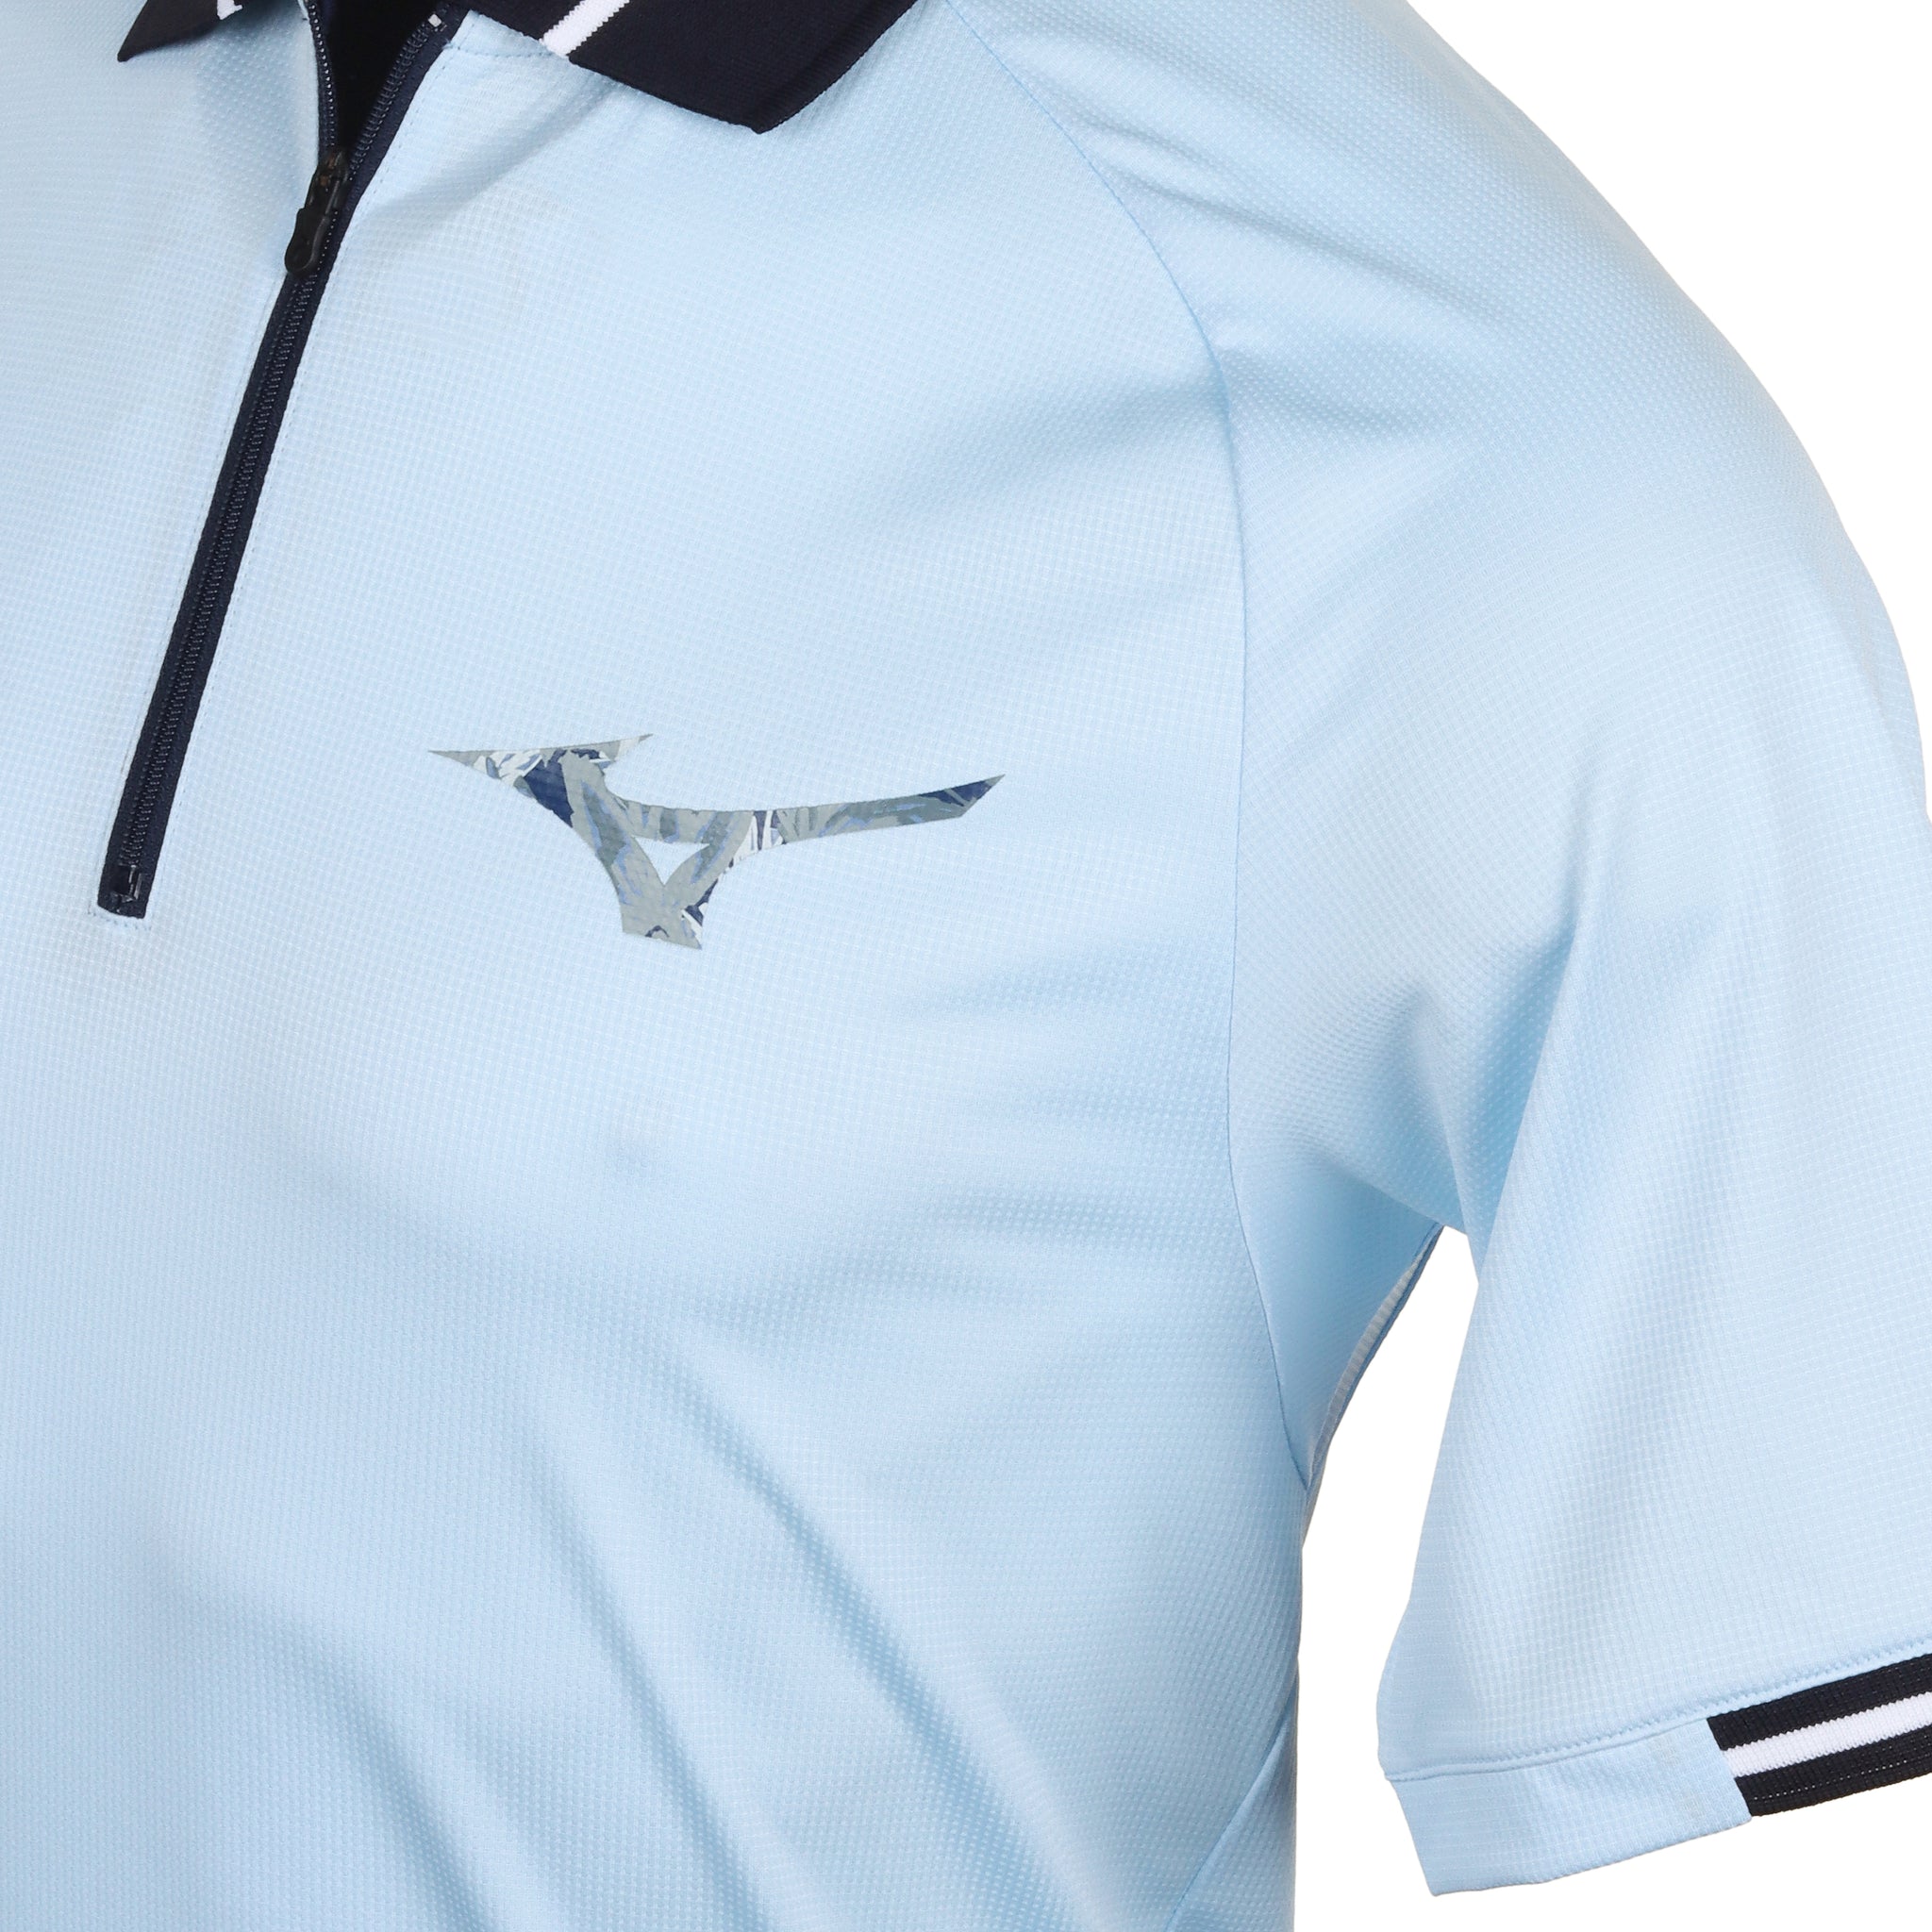 Mizuno Golf Ace Polo Shirt